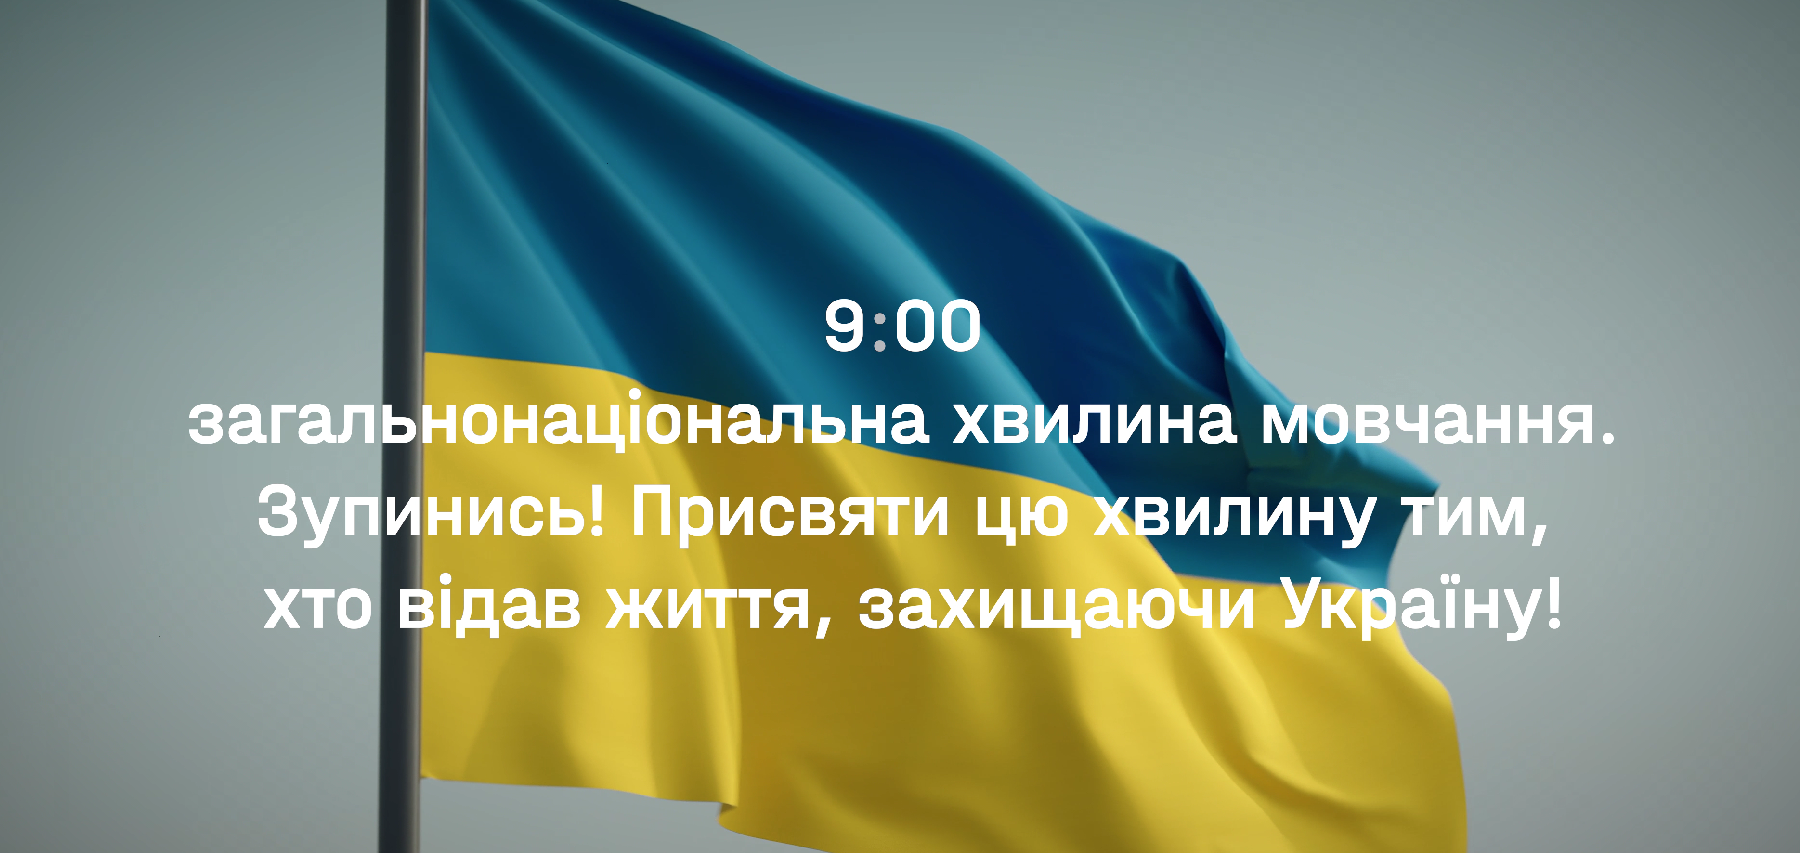 9:00 – загальнонаціональна хвилина мовчання. Присвятіть цю хвилину тим, хто віддав життя за Україну!